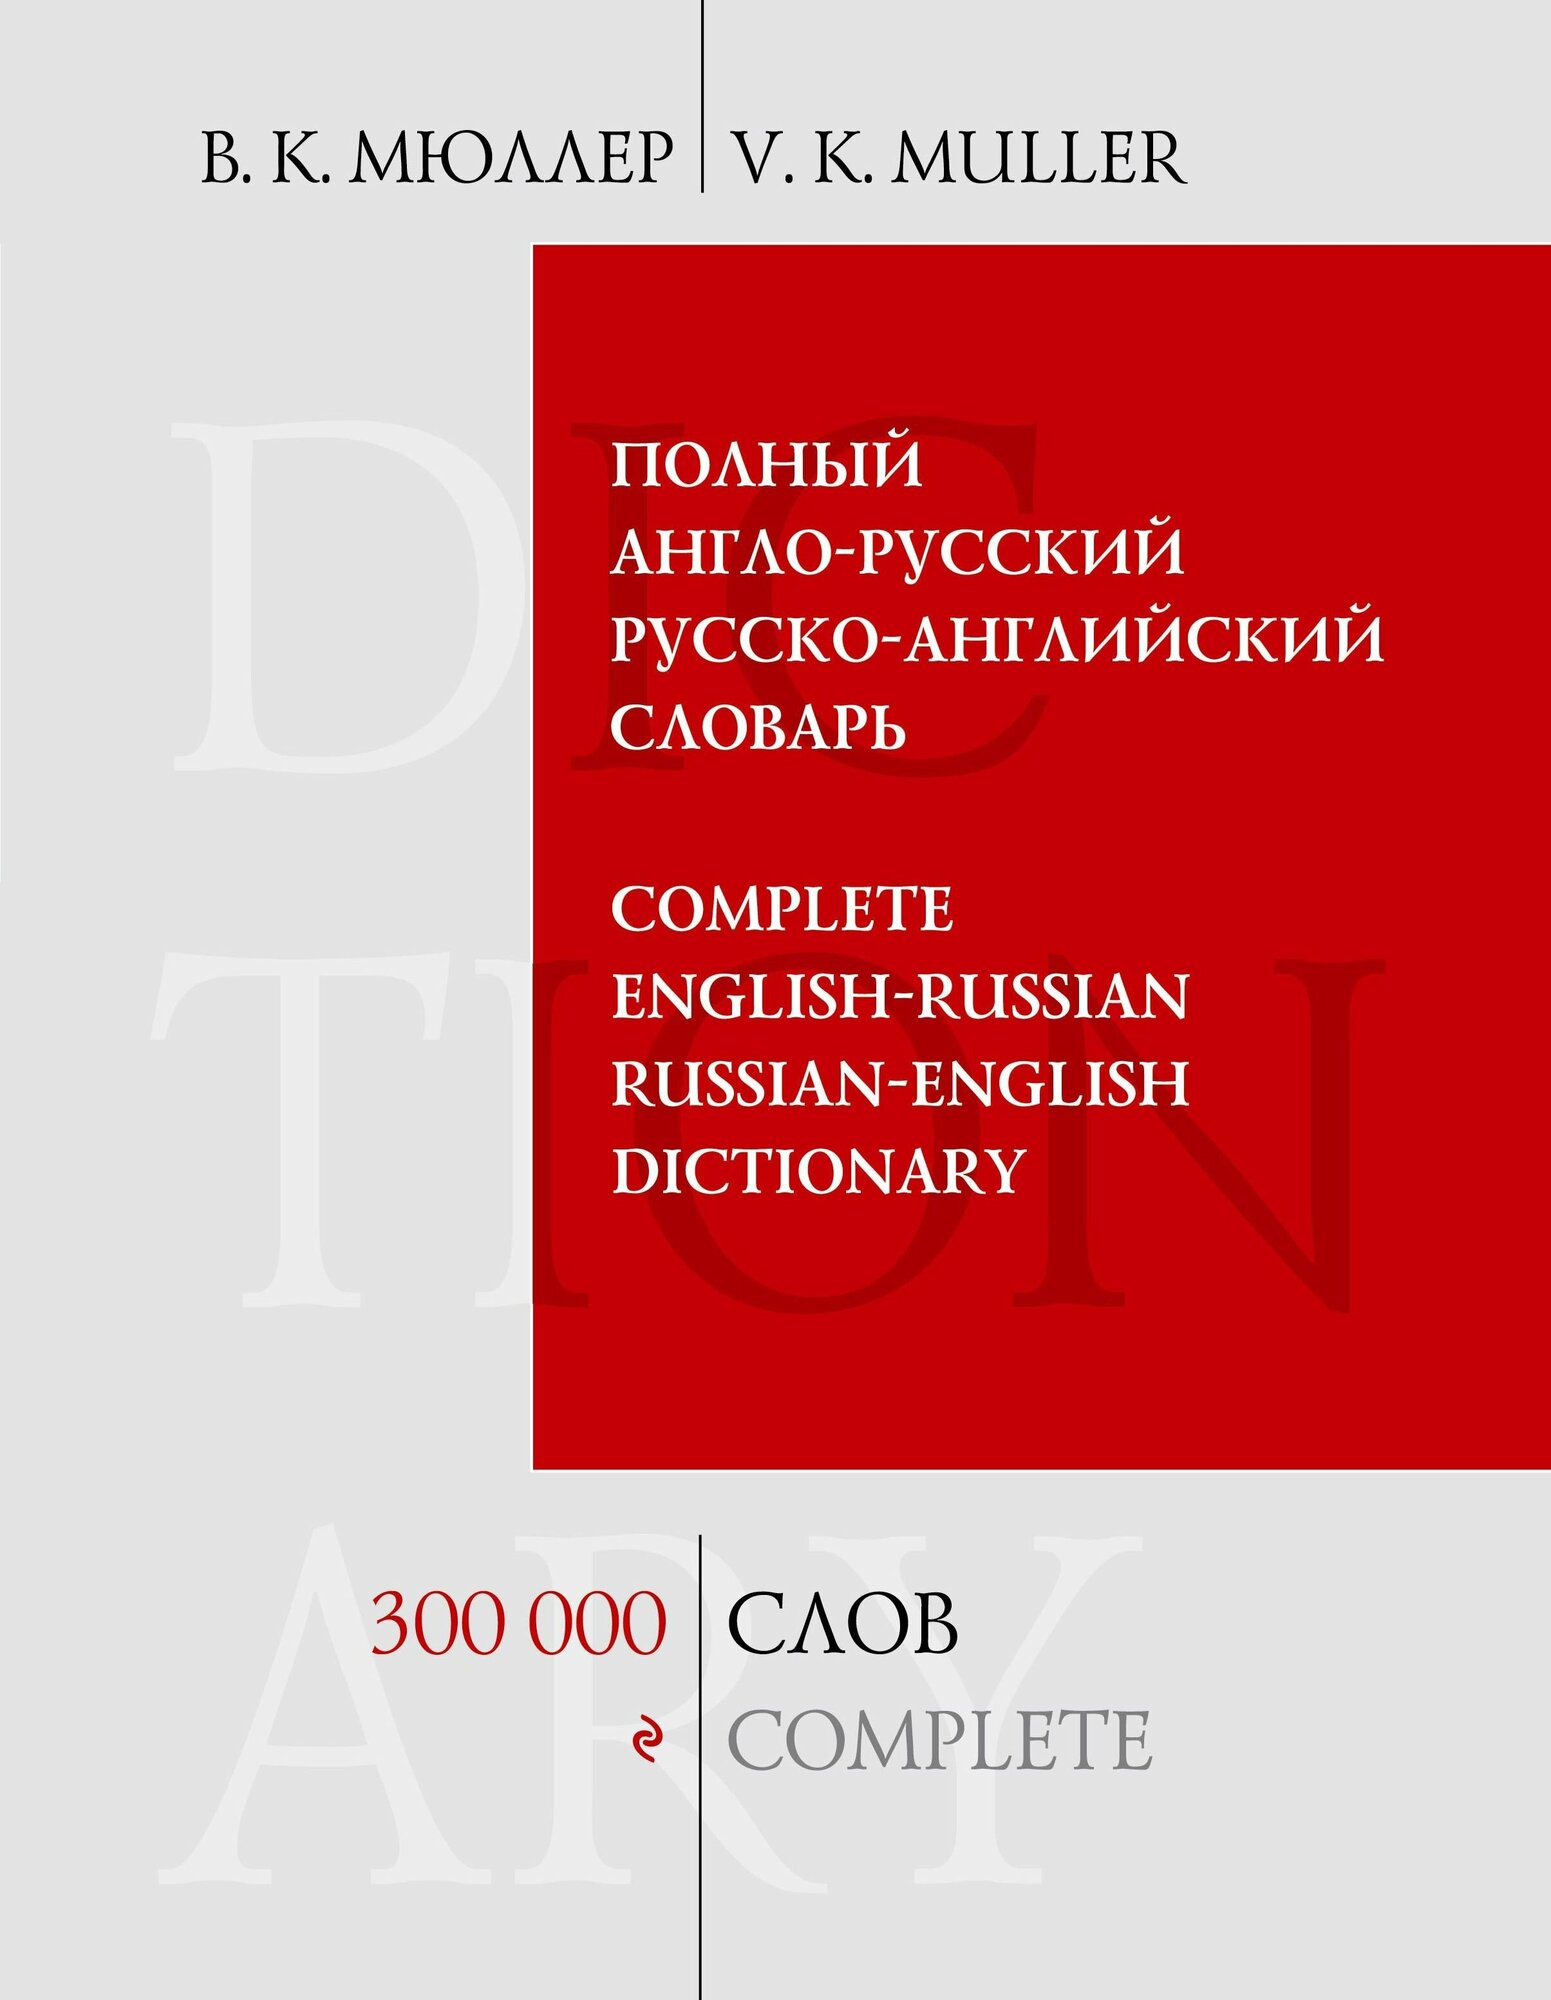 Полный англо-русский русско-английский словарь. 300000 слов и выражений - фото №2